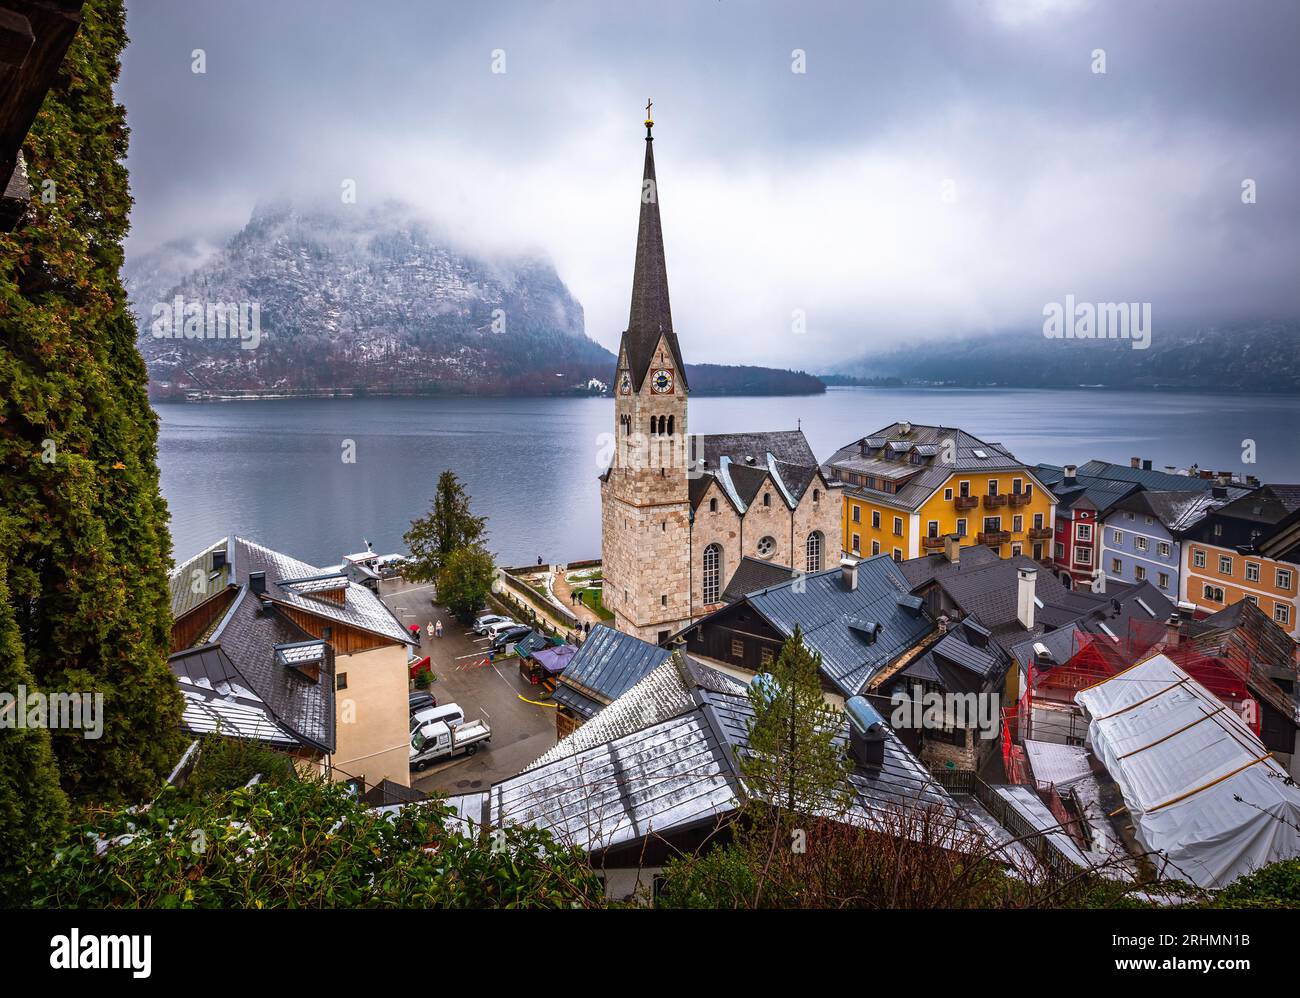 Hallstatt, Österreich - der weltberühmte Hallstatt, die zum UNESCO-Weltkulturerbe gehörende Stadt am See mit der Lutherischen Kirche Hallstatt an einem kalten nebligen Tag mit Schneefall Stockfoto